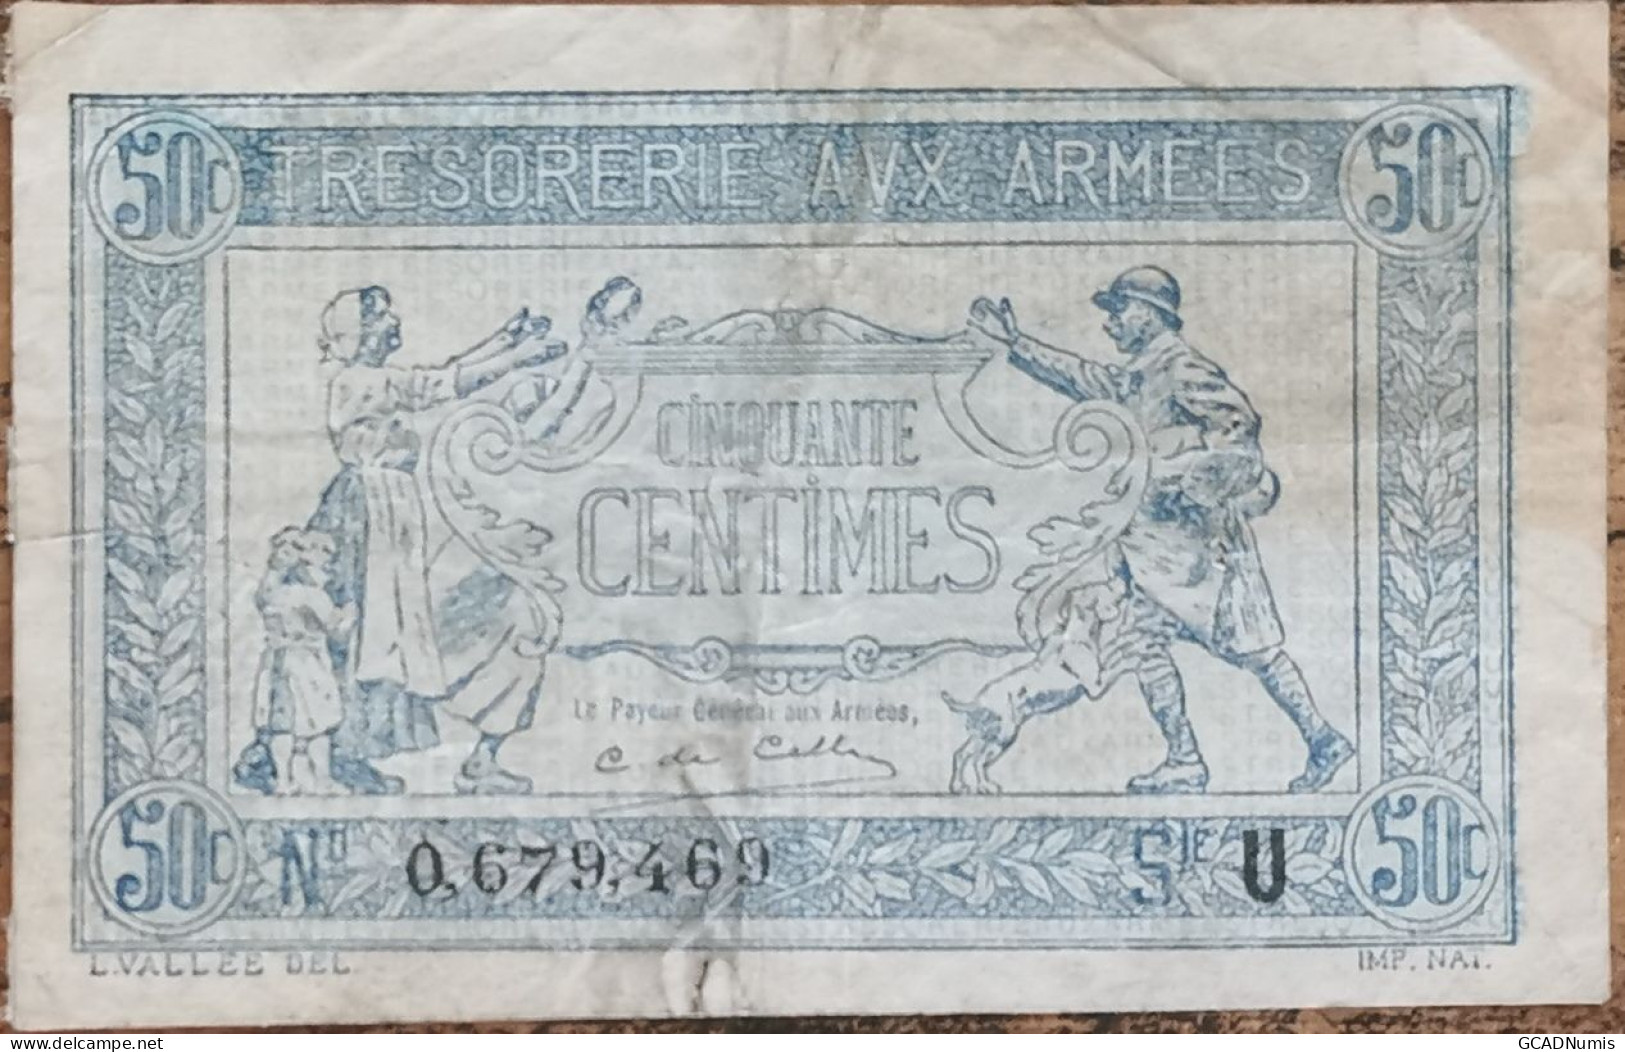 Billet De 50 Centimes Franc TRÉSORERIE AUX ARMÉES 1917 FRANCE Série A 0679469 - 1917-1919 Army Treasury